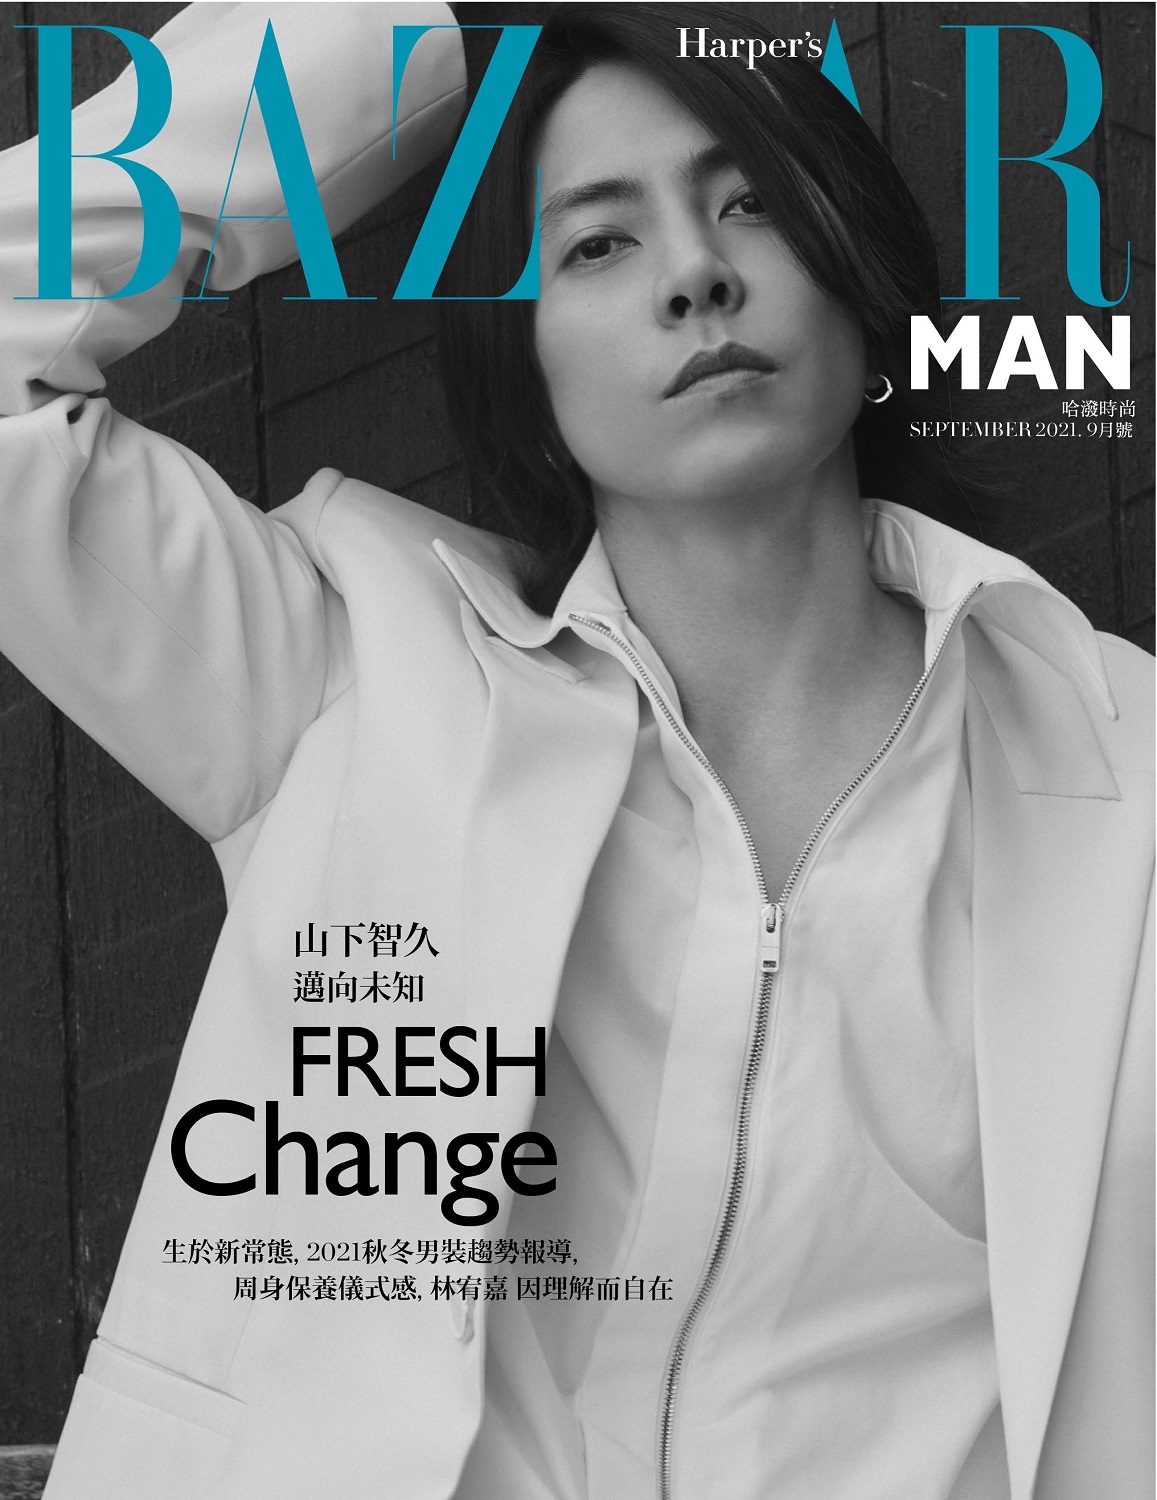 中国雑誌 流行時尚 『Harper's BAZAAR MAN 2021年9月號 第379期 山下 